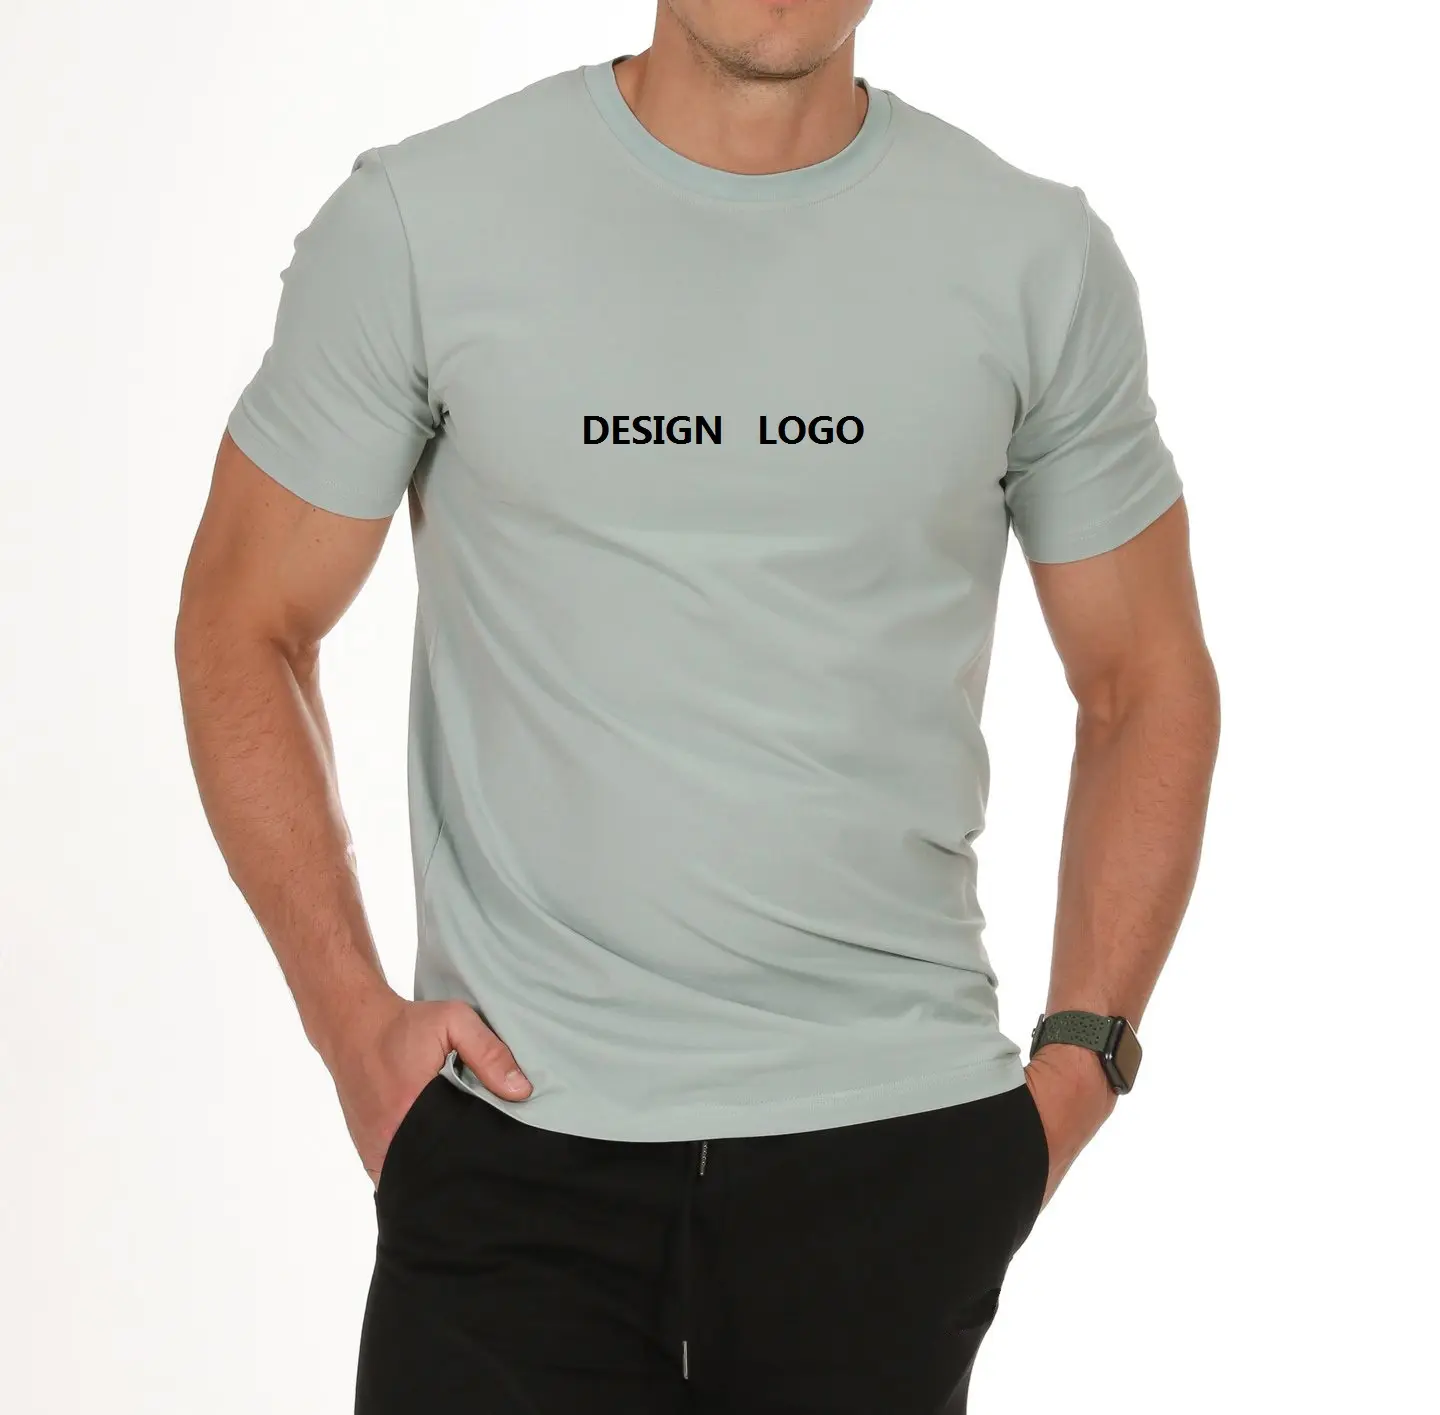 Одежда для фитнеса для мужчин, 97 хлопок, 3 спандекса, футболка для тренажерного зала, рубашки с вышивкой, Мужская футболка с индивидуальным логотипом для фитнеса на заказ